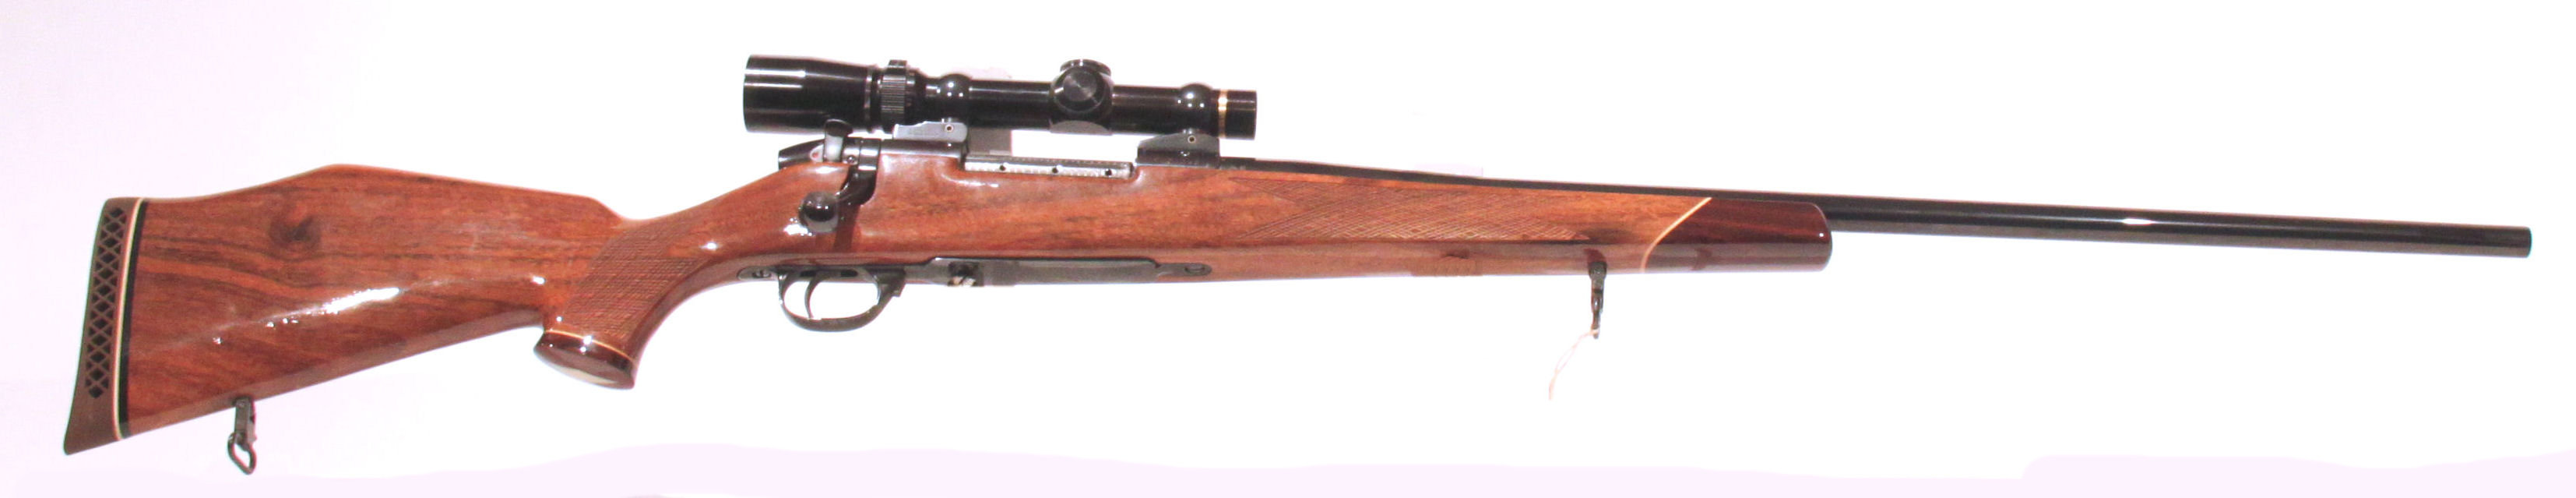 CARABINA AD OTTURATORE - MARCA WEATHERBY - MODELLO MK V - CALIBRO 378 Weatherby Magnum 39